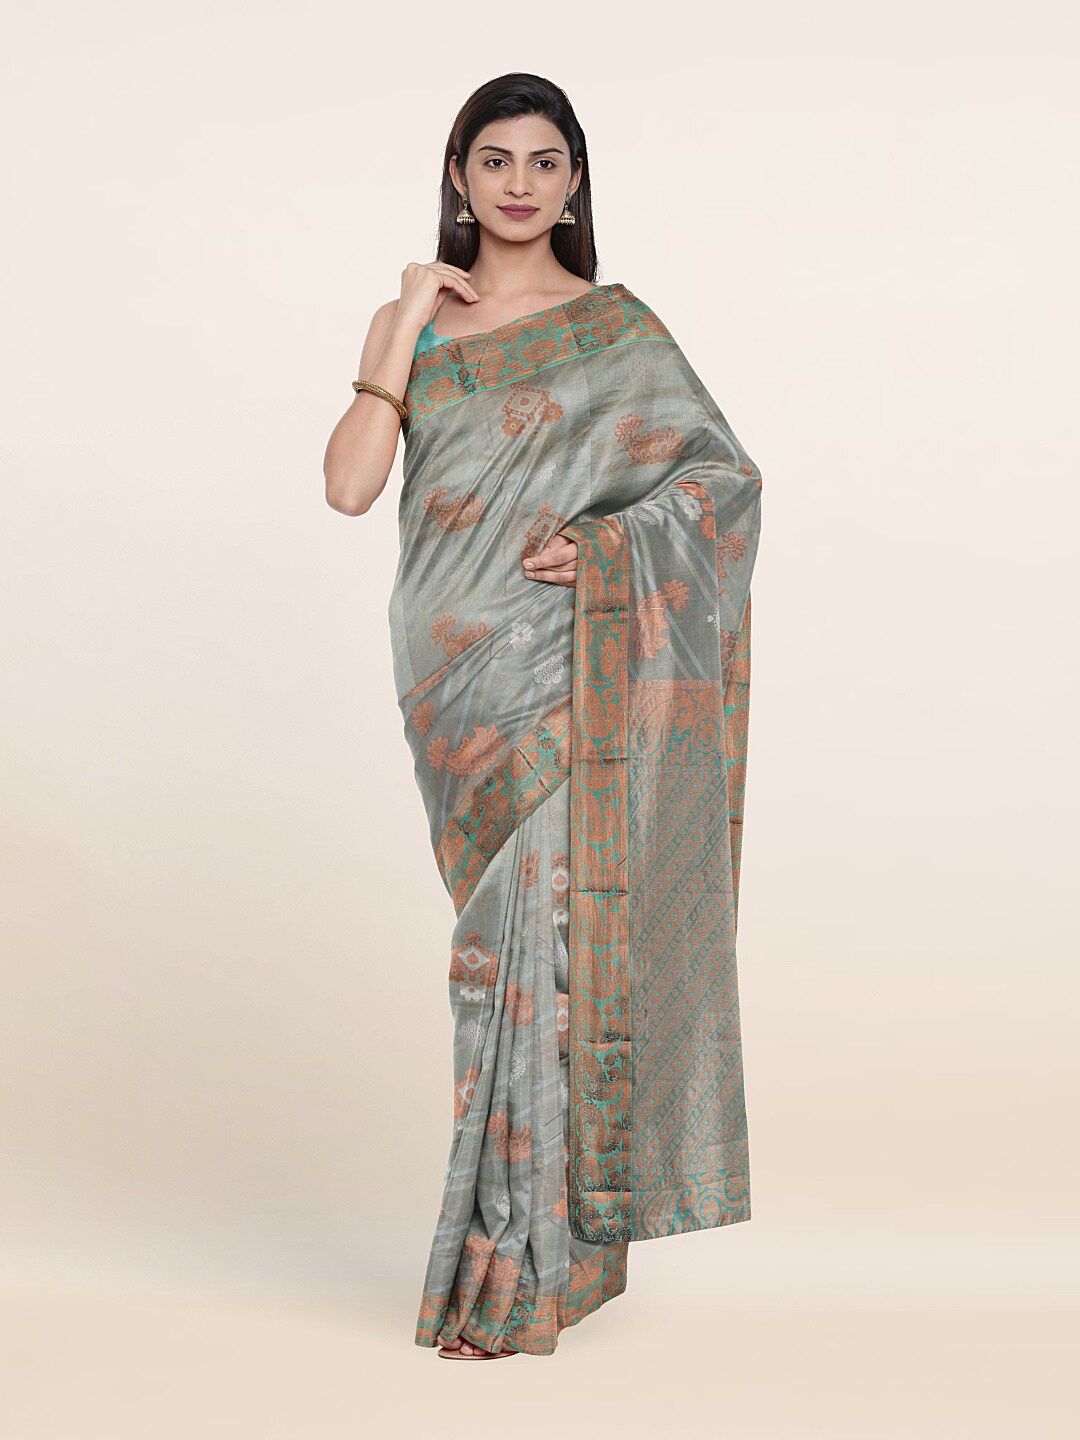 Pothys Grey & Copper-Toned Ethnic Motifs Zari Pure Silk Saree Price in India